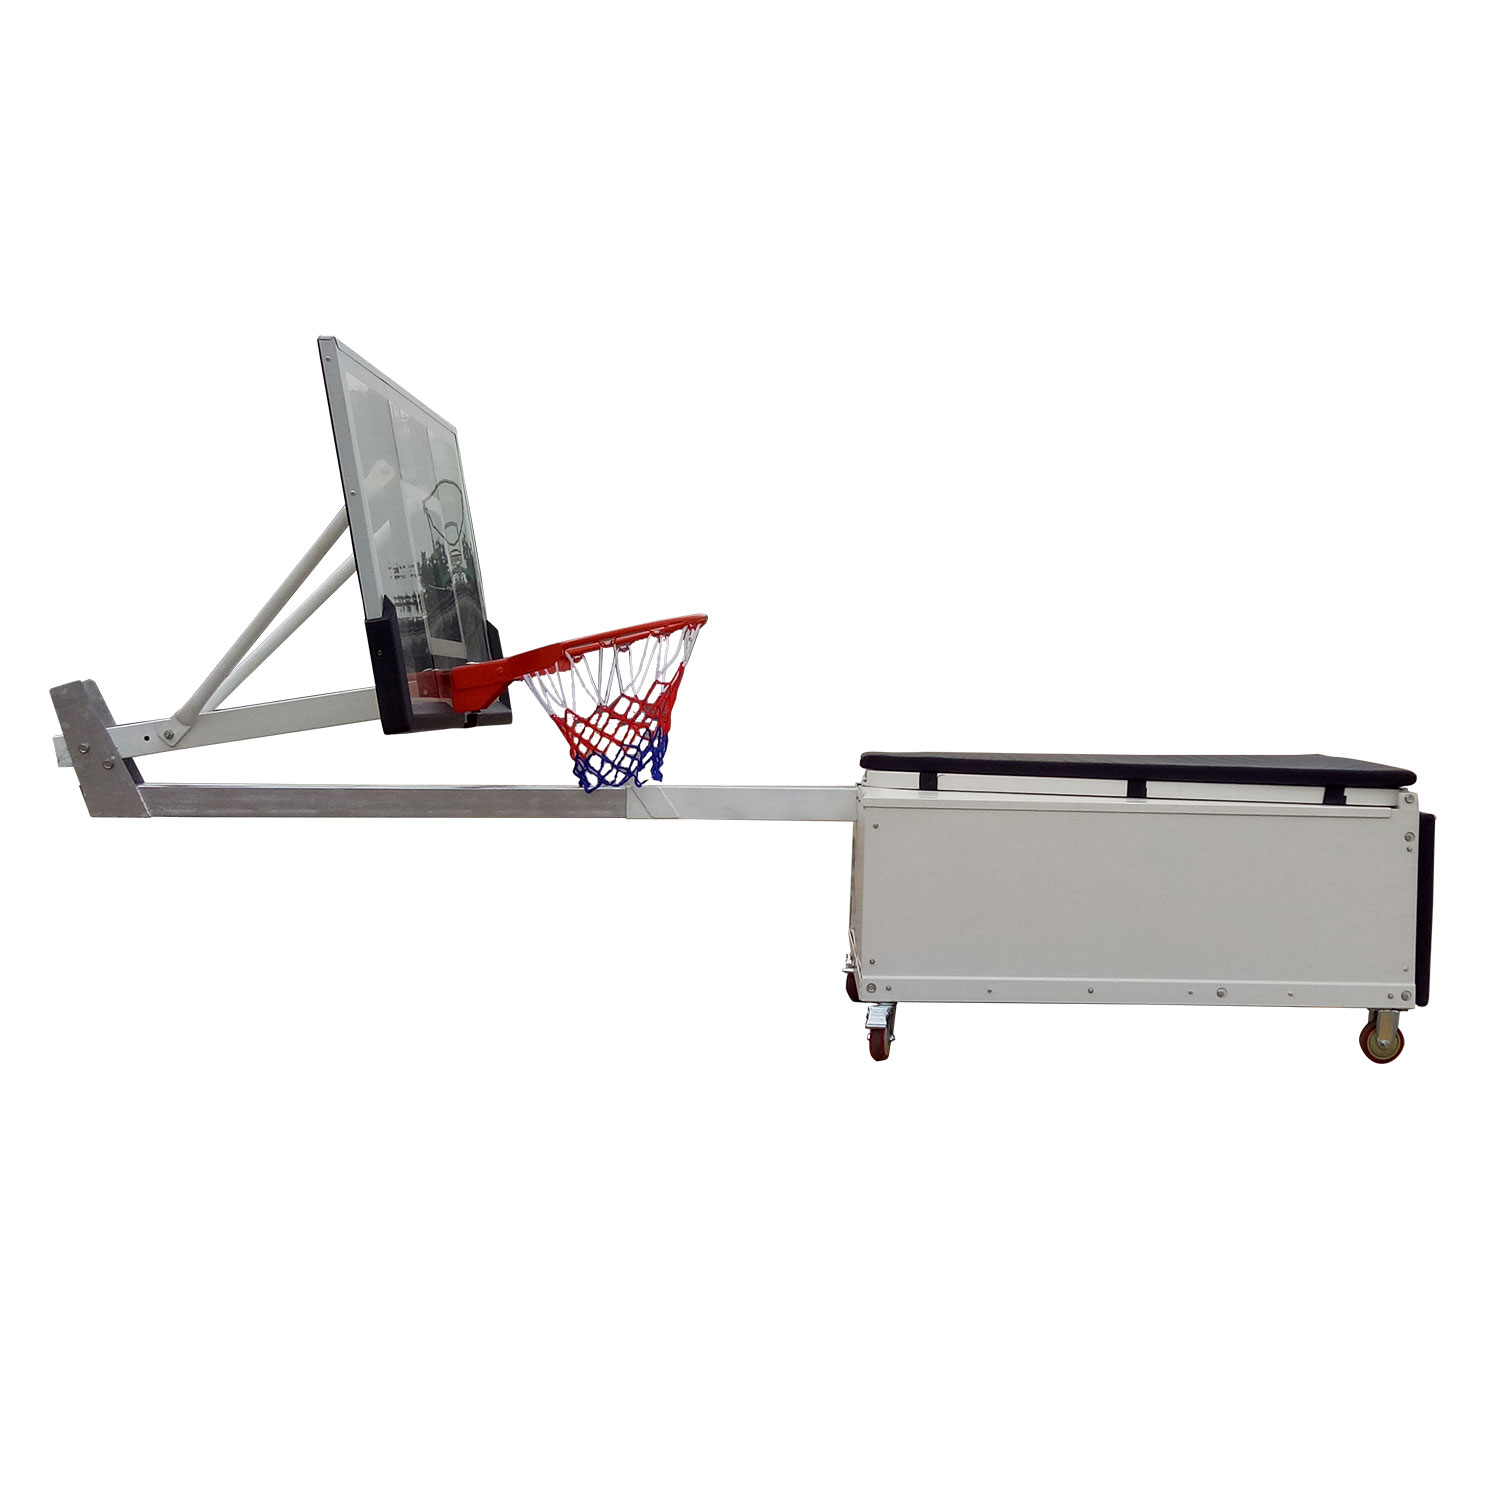 Баскетбольная мобильная стойка DFC STAND50SG 127X80CM поликарбонат (3кор)